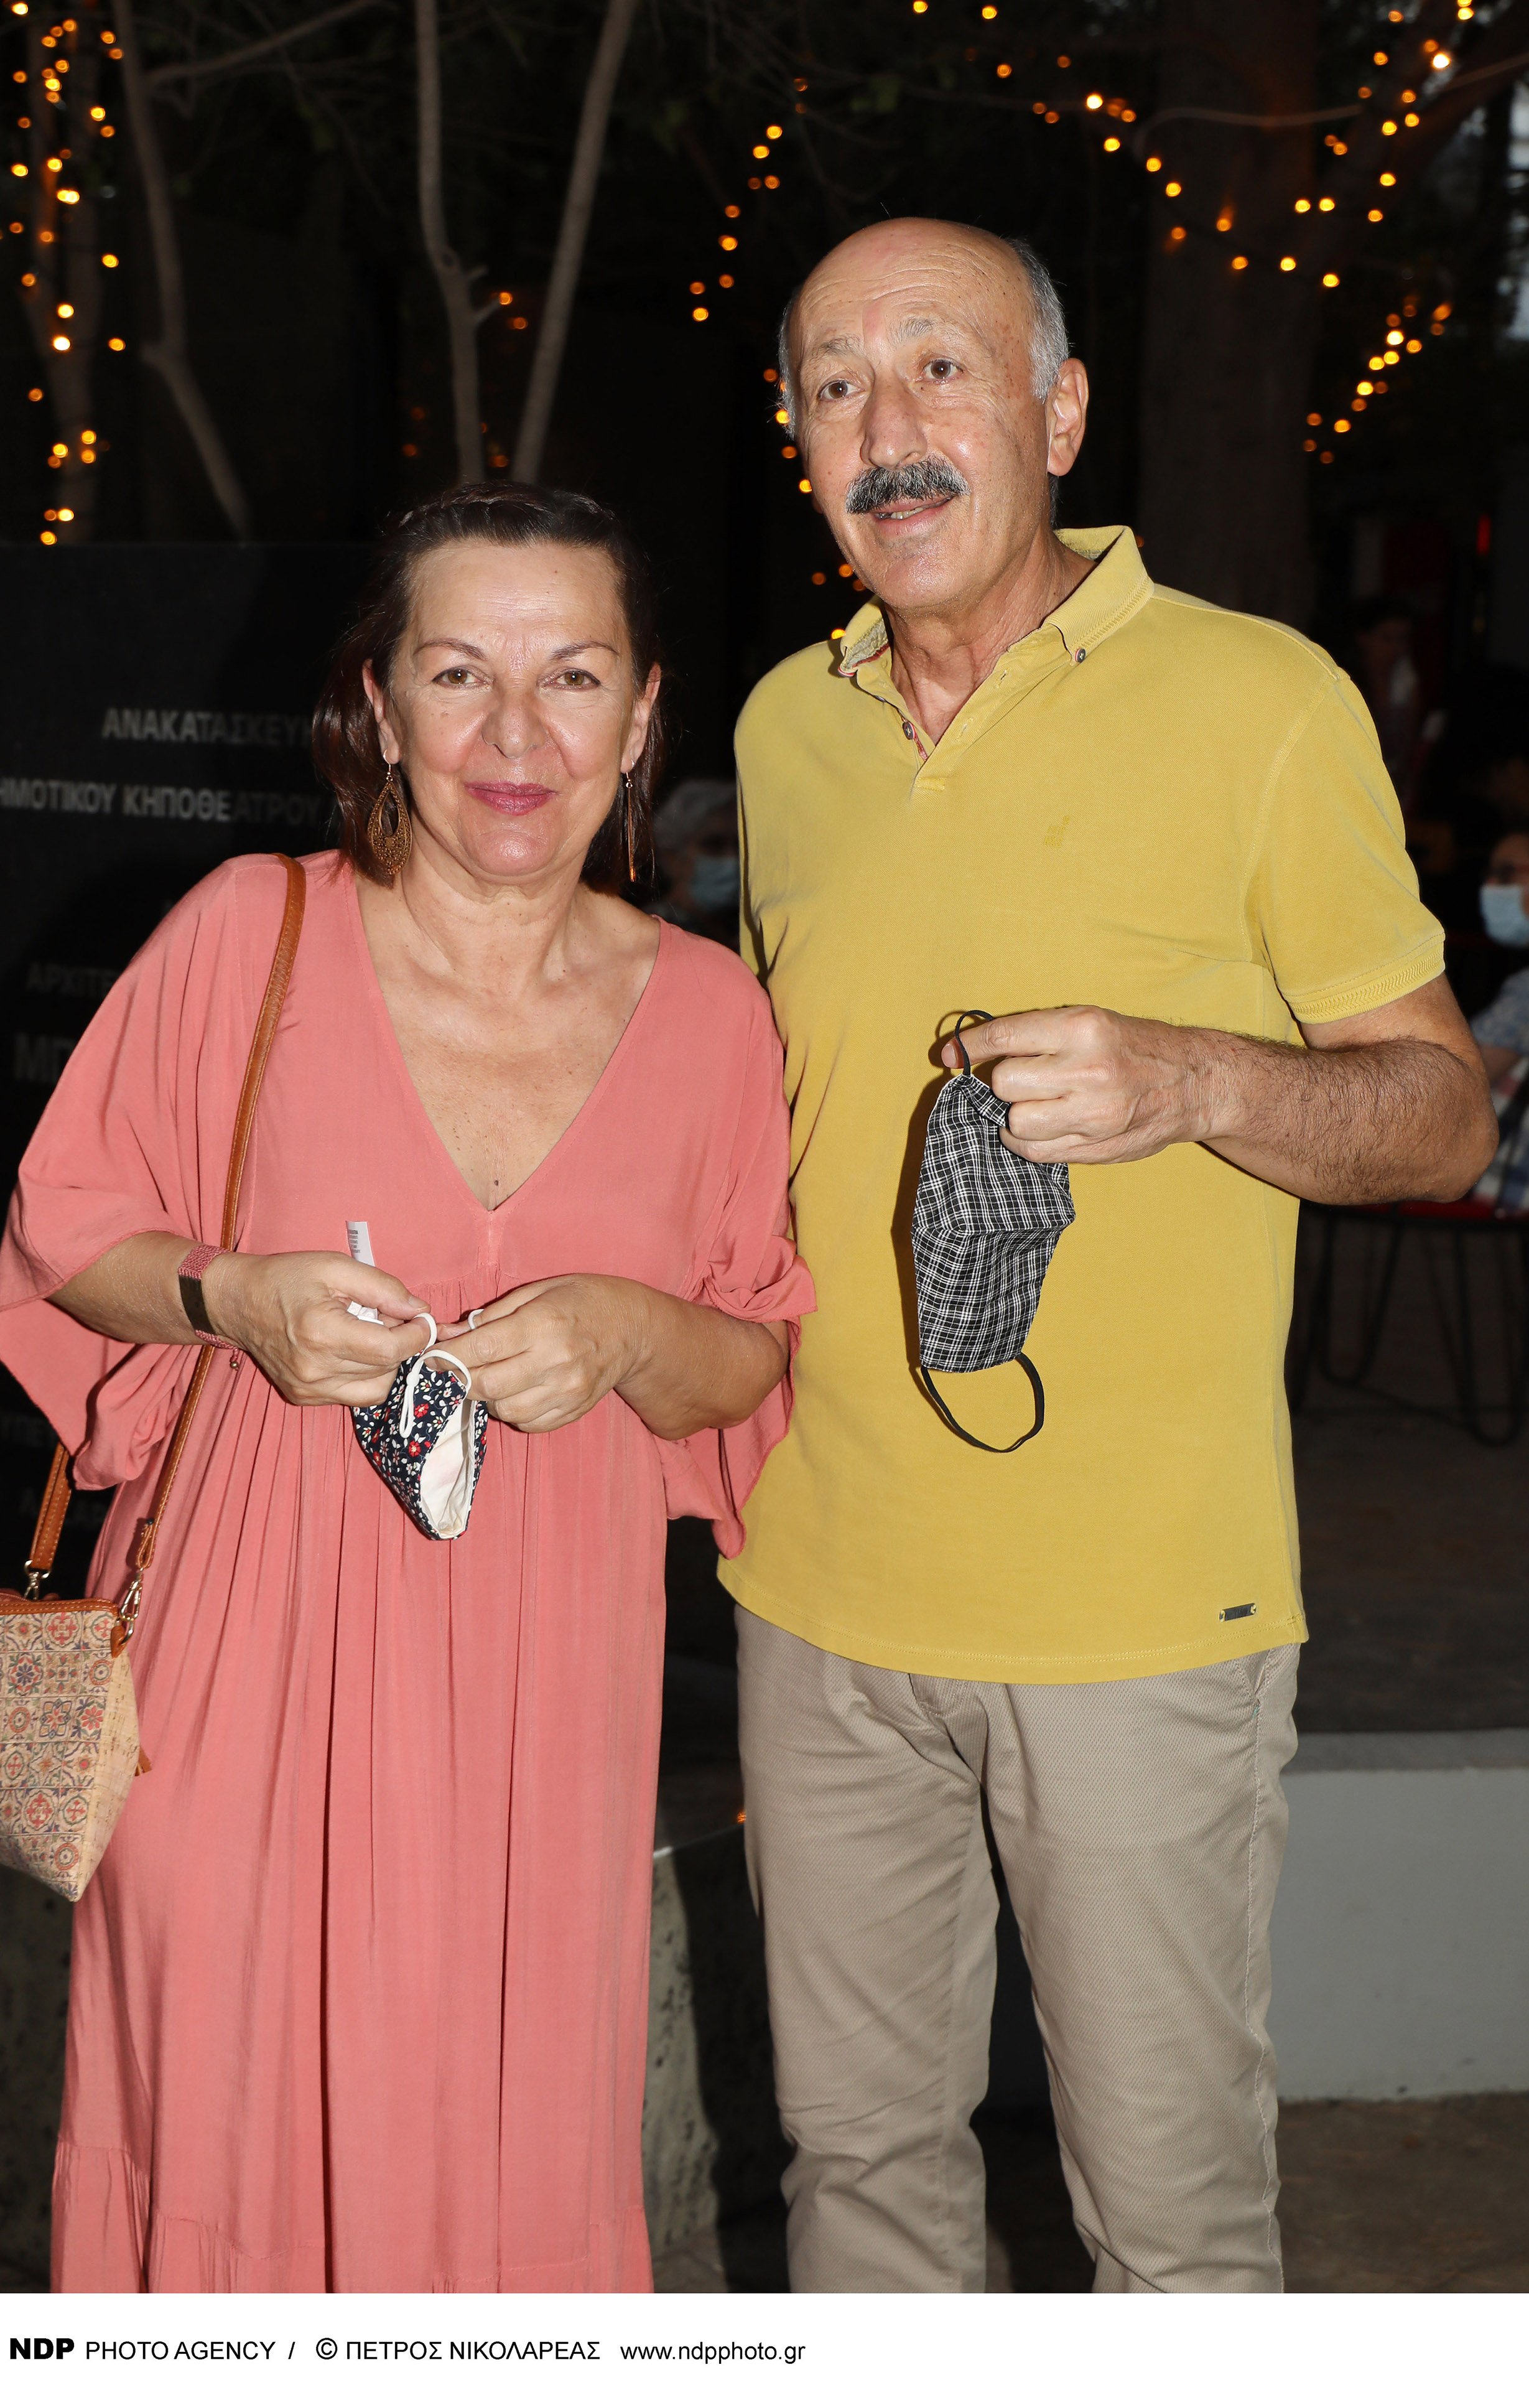 Παύλος Ορκόπουλος: Αυτή είναι η σύζυγός του που μετρούν 44 χρόνια κοινής πορείας και της αφήνει σημείωμα κάθε πρωί